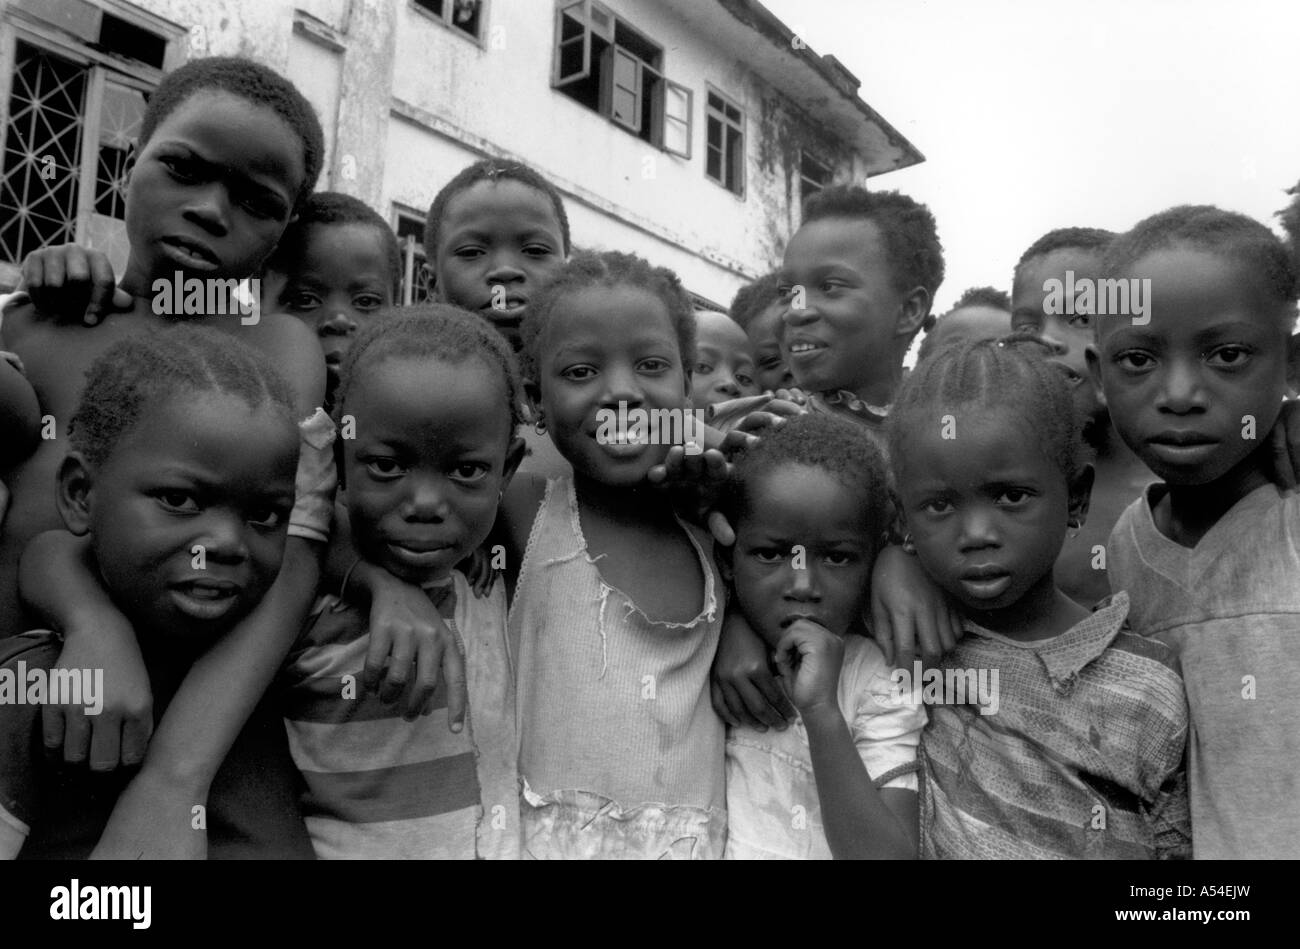 Painet hn2021 711 in bianco e nero hildren buchanan liberia paese nazione in via di sviluppo meno sviluppati dal punto di vista economico la cultura Foto Stock